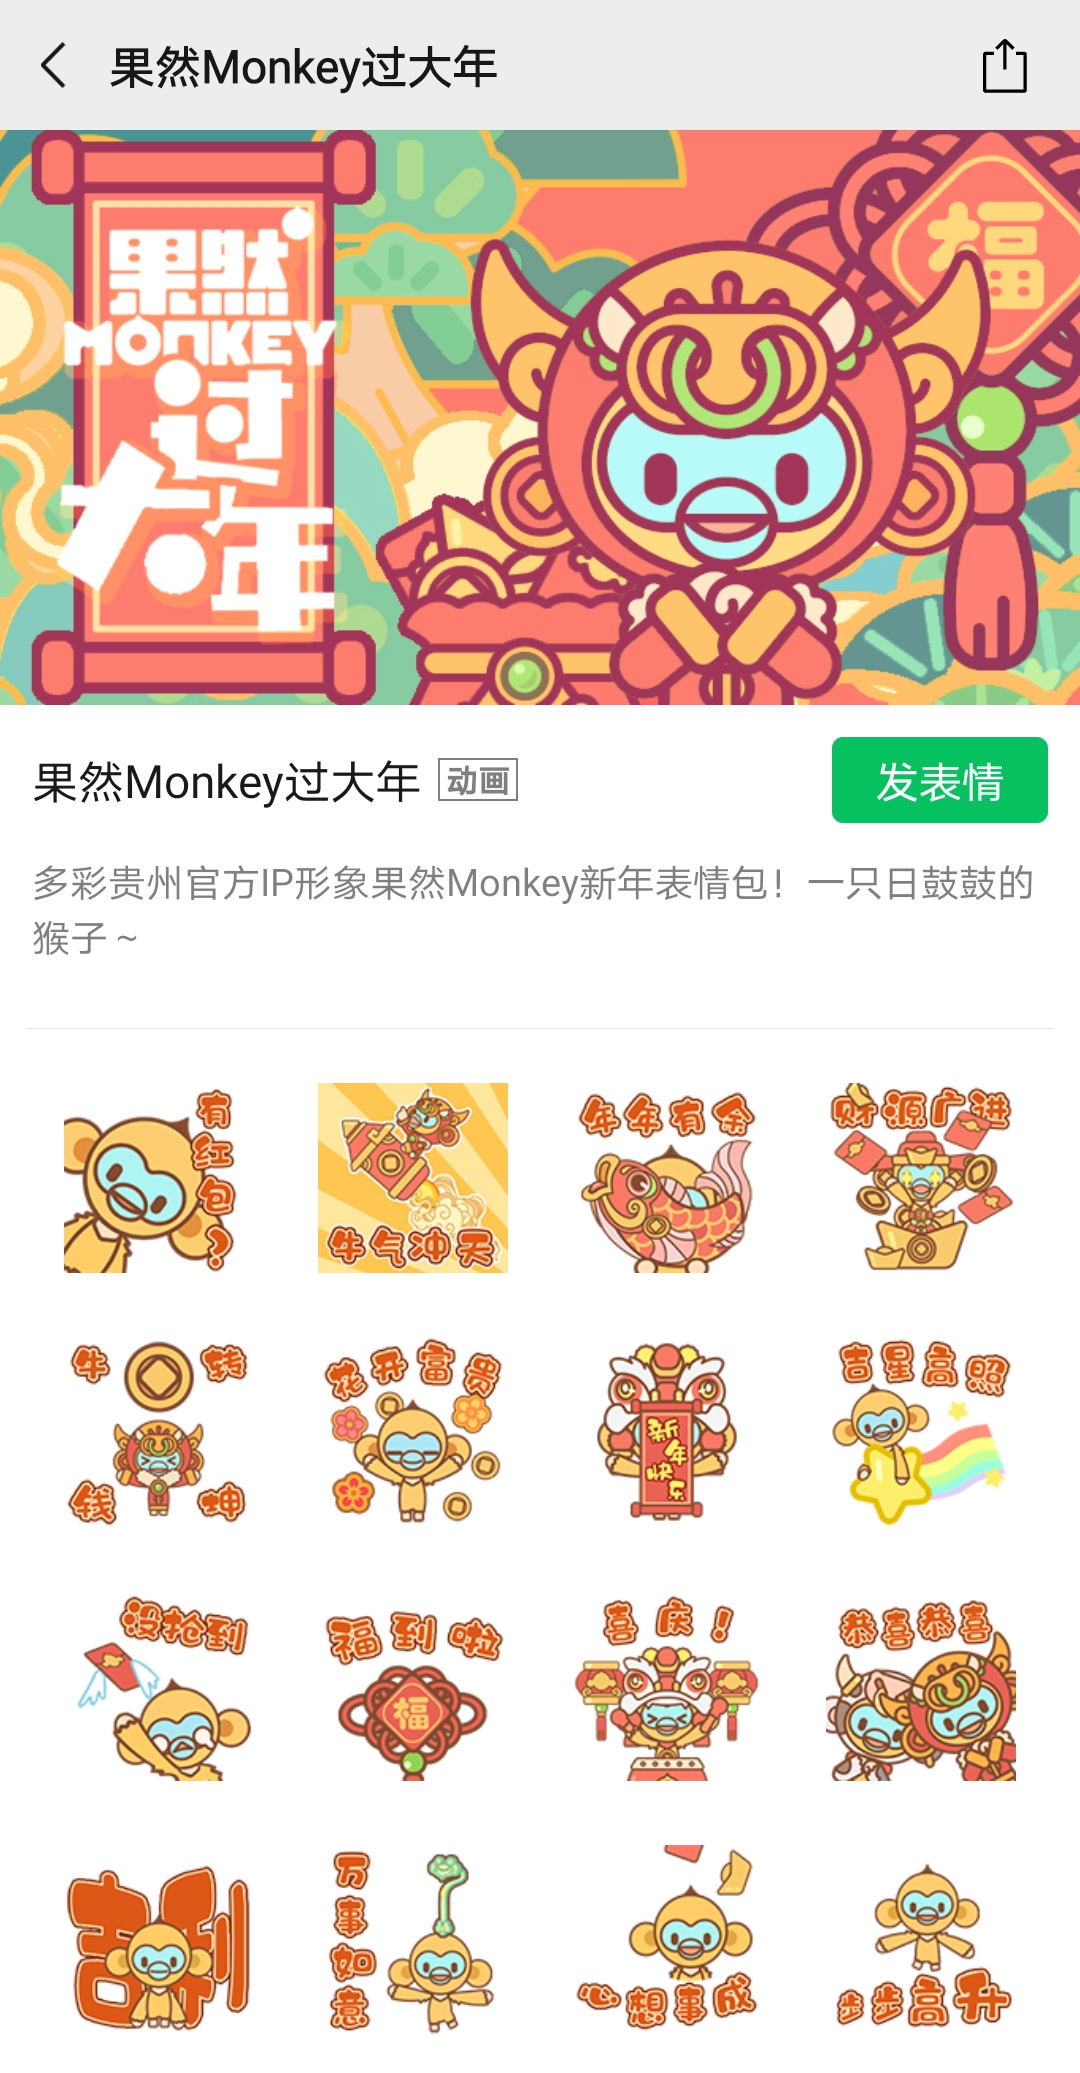 果然Monkey